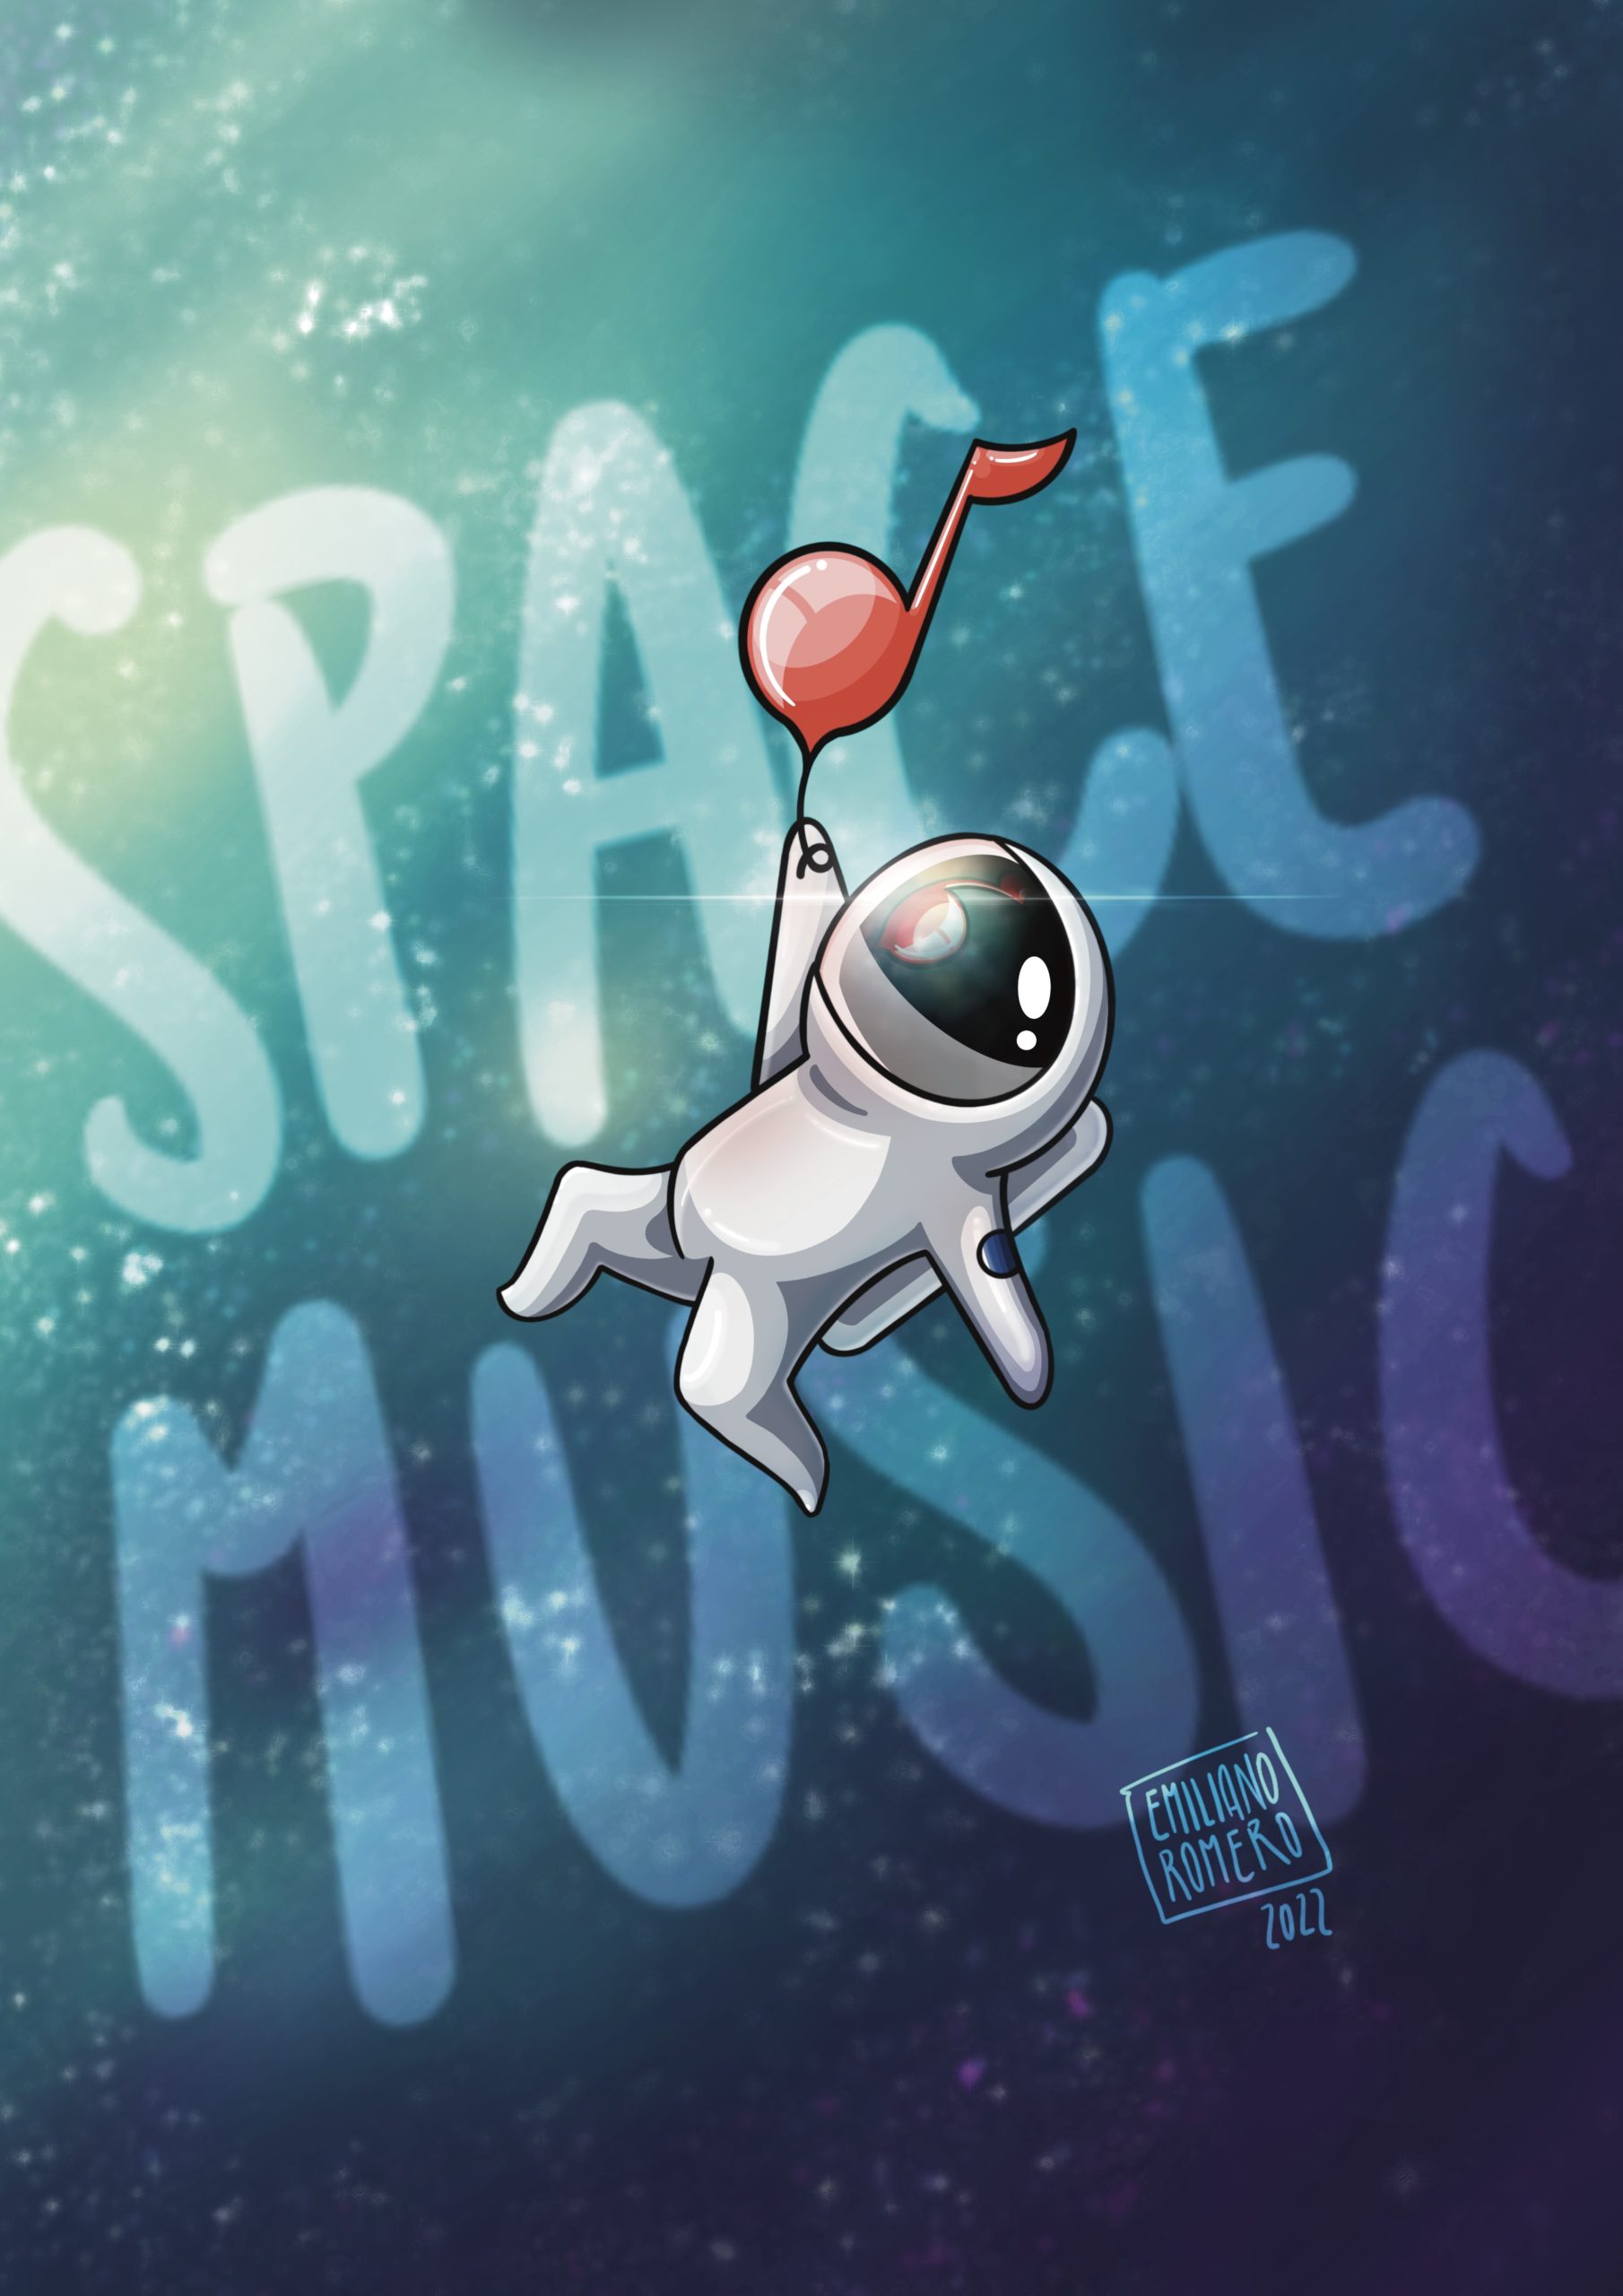 Emiliano_Romero_Design_Illustration_SpaceMusic